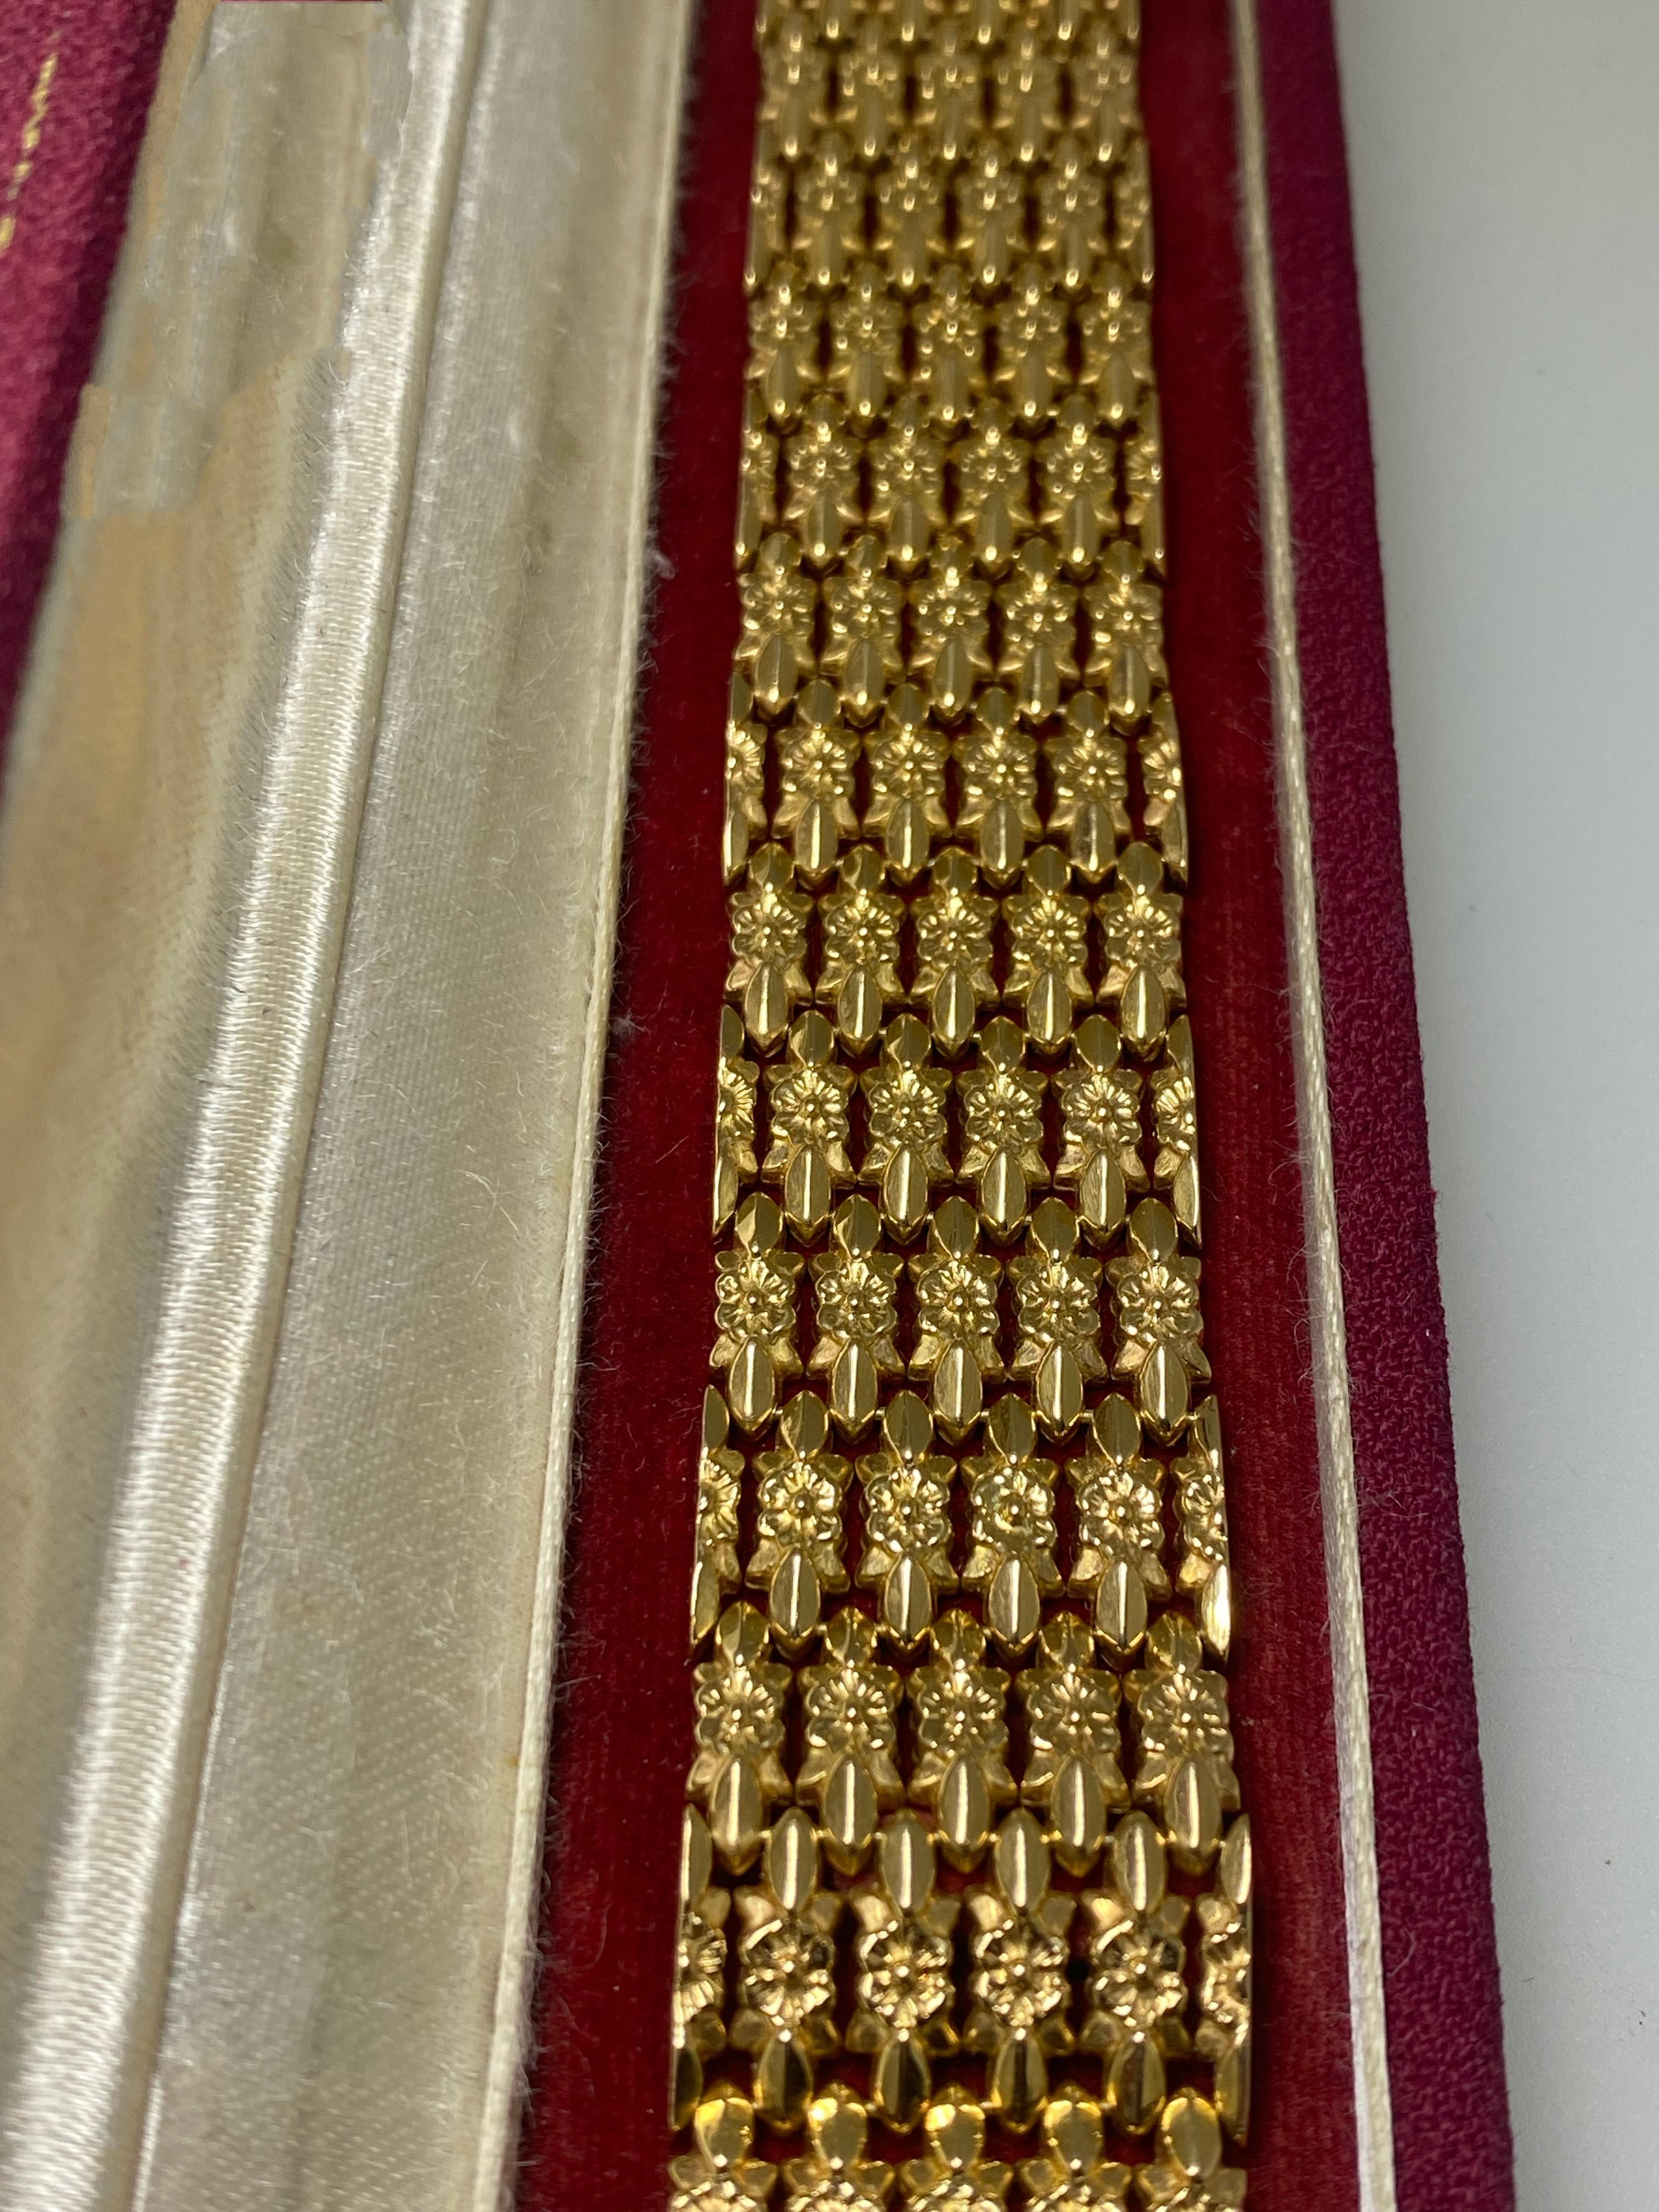 mit italienischer Herkunft
dieses wunderschöne Armband ist retro -
handgefertigt in den 1950er Jahren, 
jedoch unter bemerkenswerten Bedingungen 

Sorgfältig aus 18 Karat Gelbgold gefertigt, 
Das 5-reihige Gliederarmband ist mit einem wunderschönen